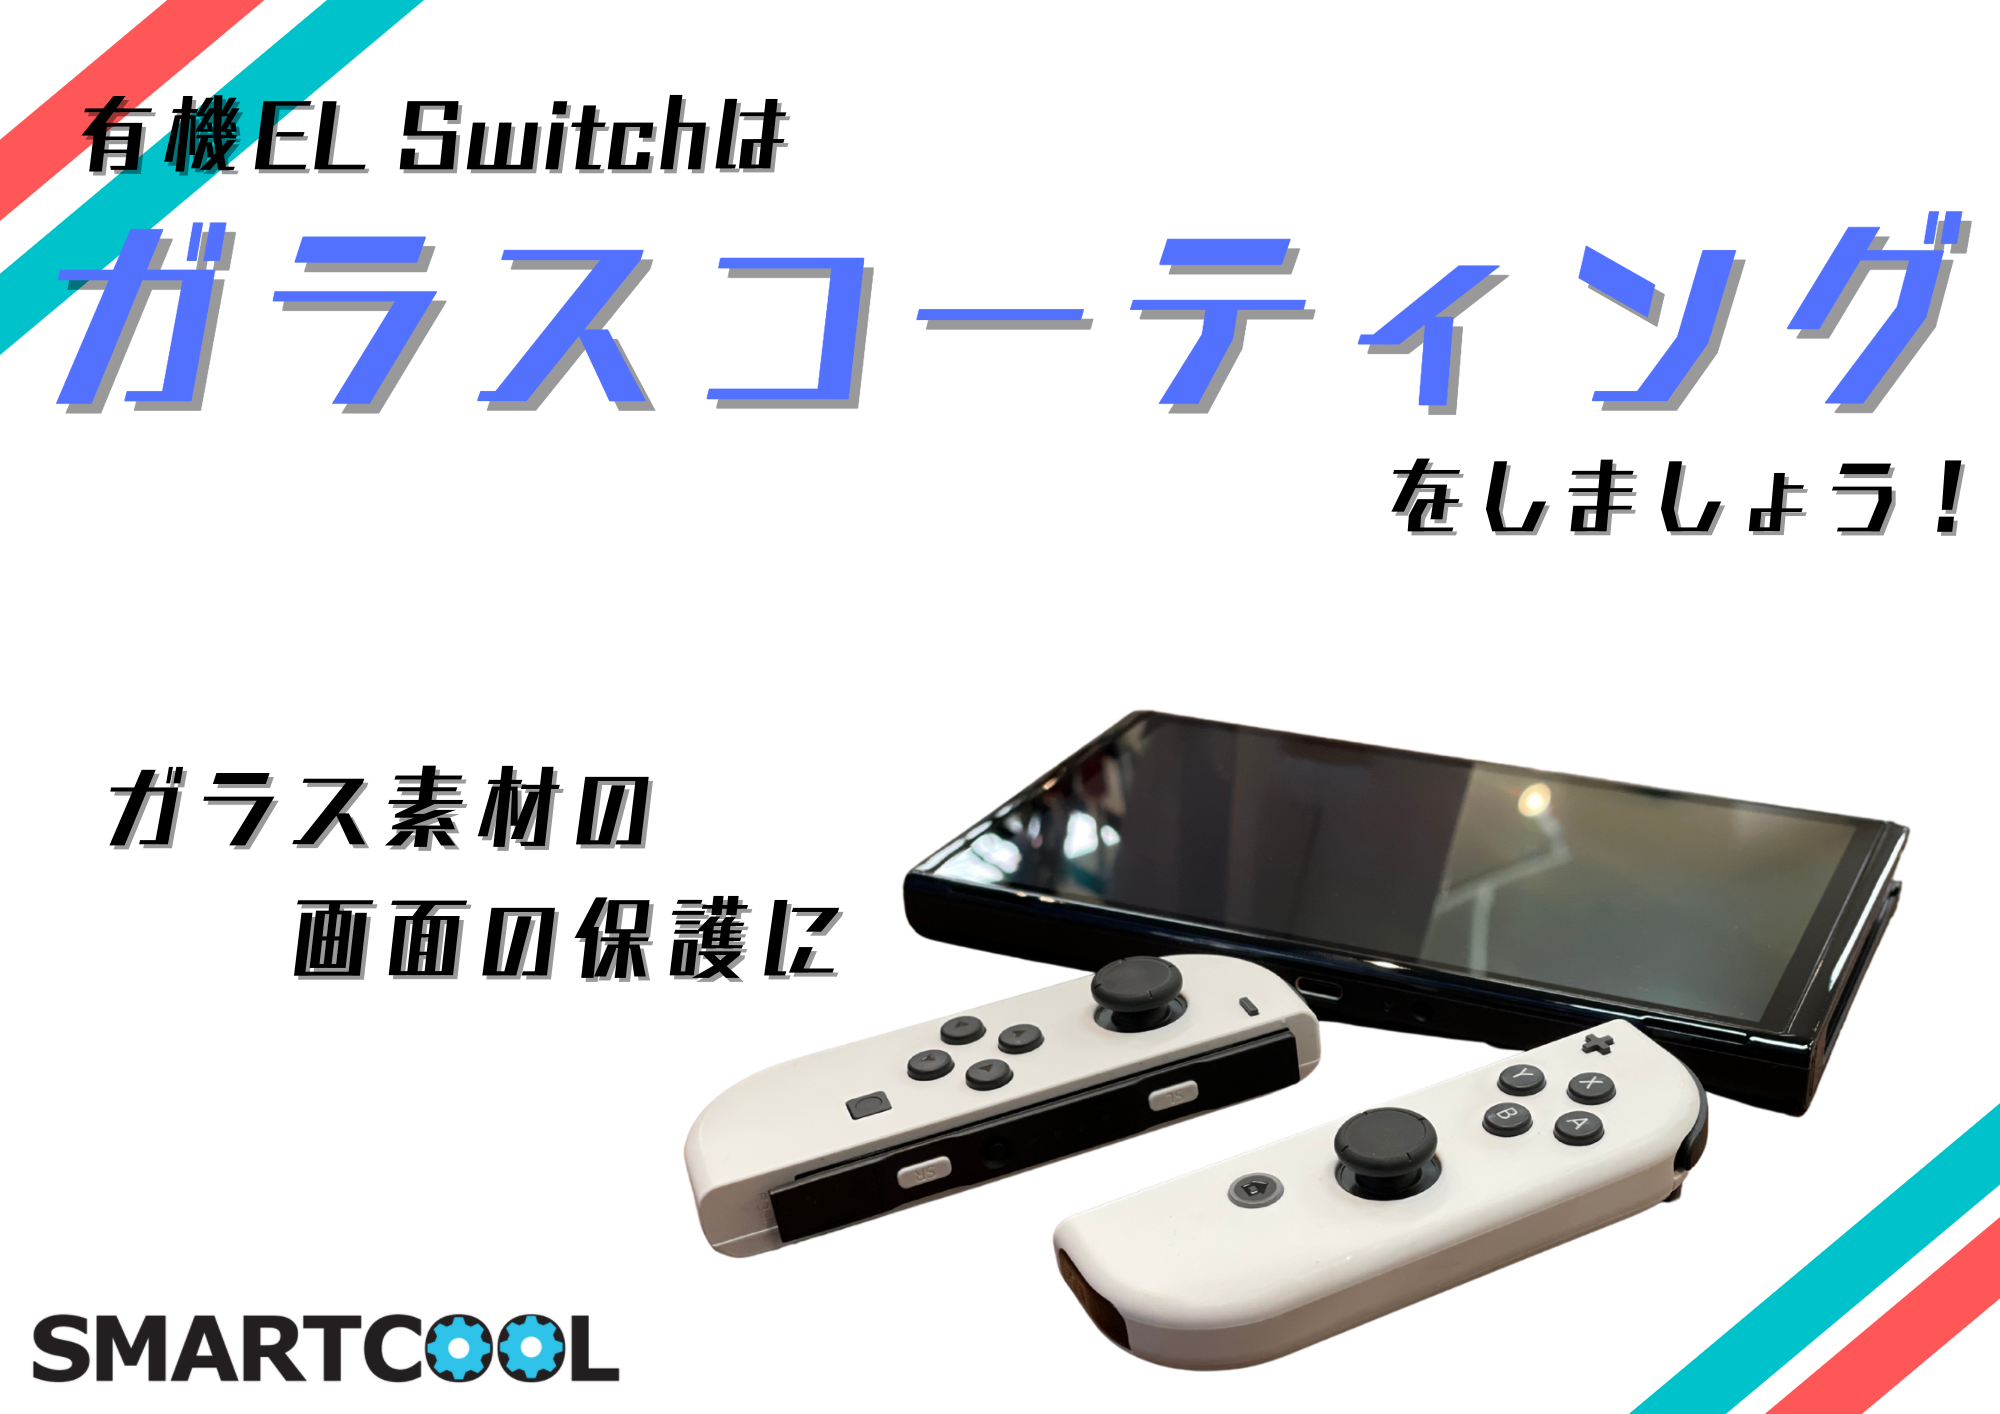 有機ELモデルのSwitchをご購入予定の皆様へ【Nintendo Switch有機ELモデル】